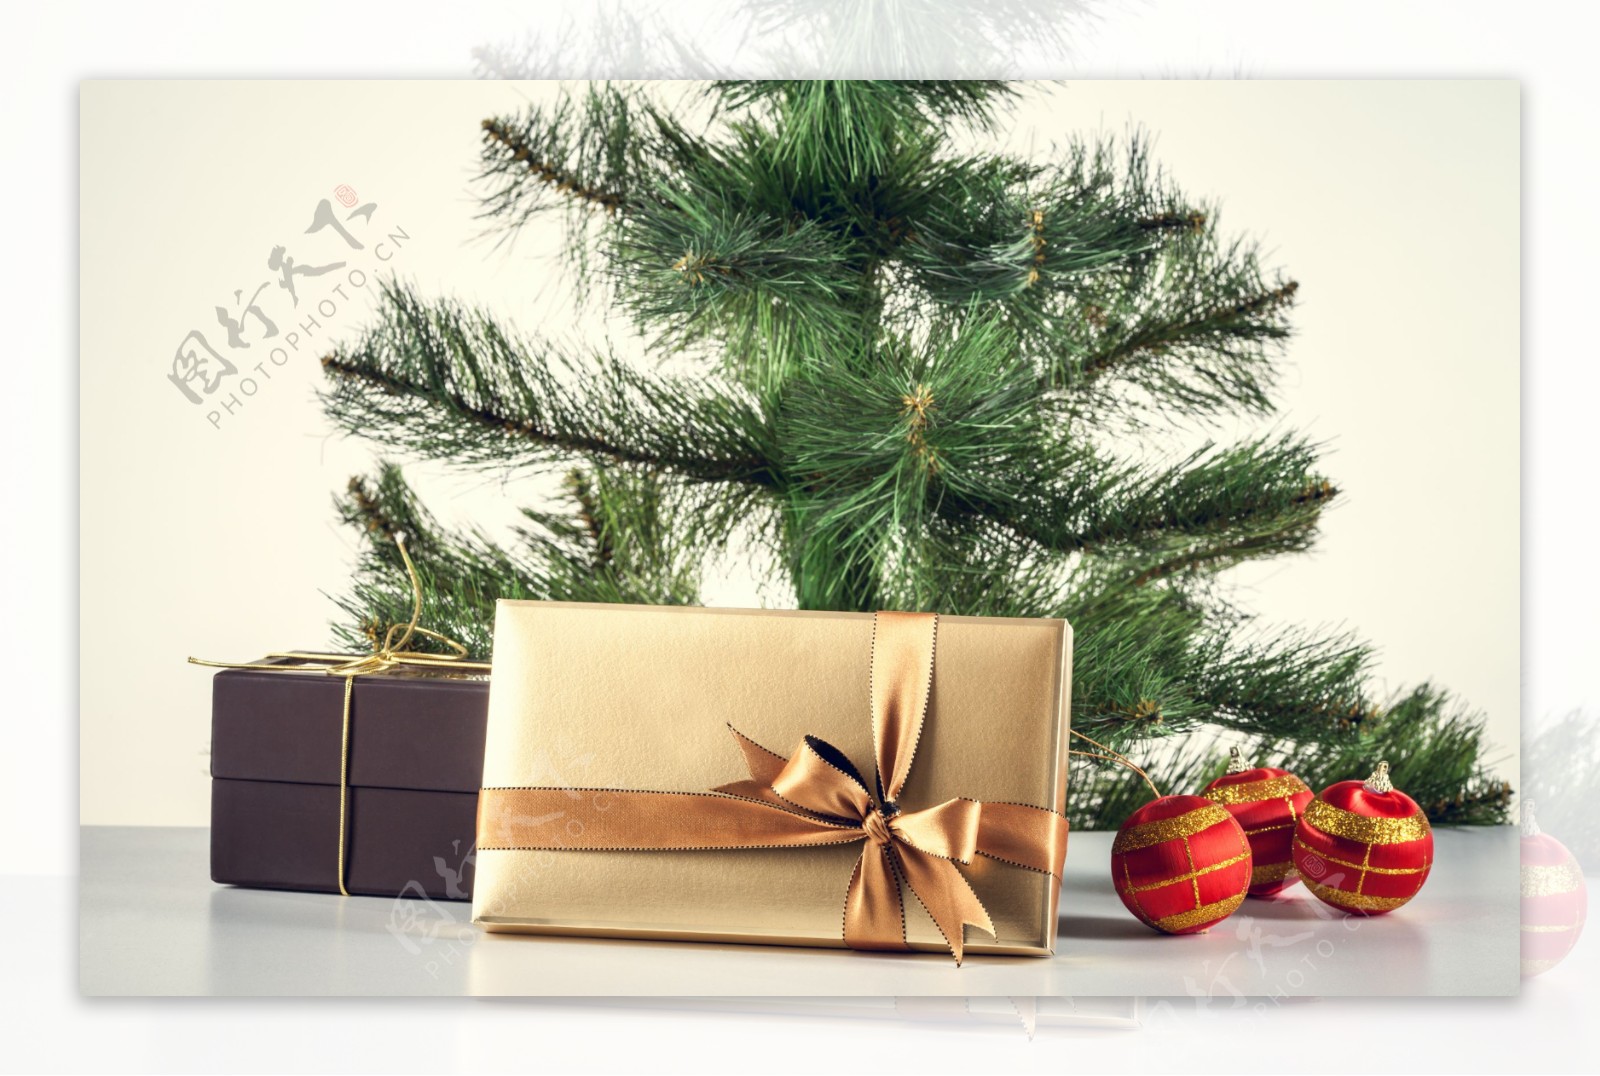 礼物与圣诞树图片